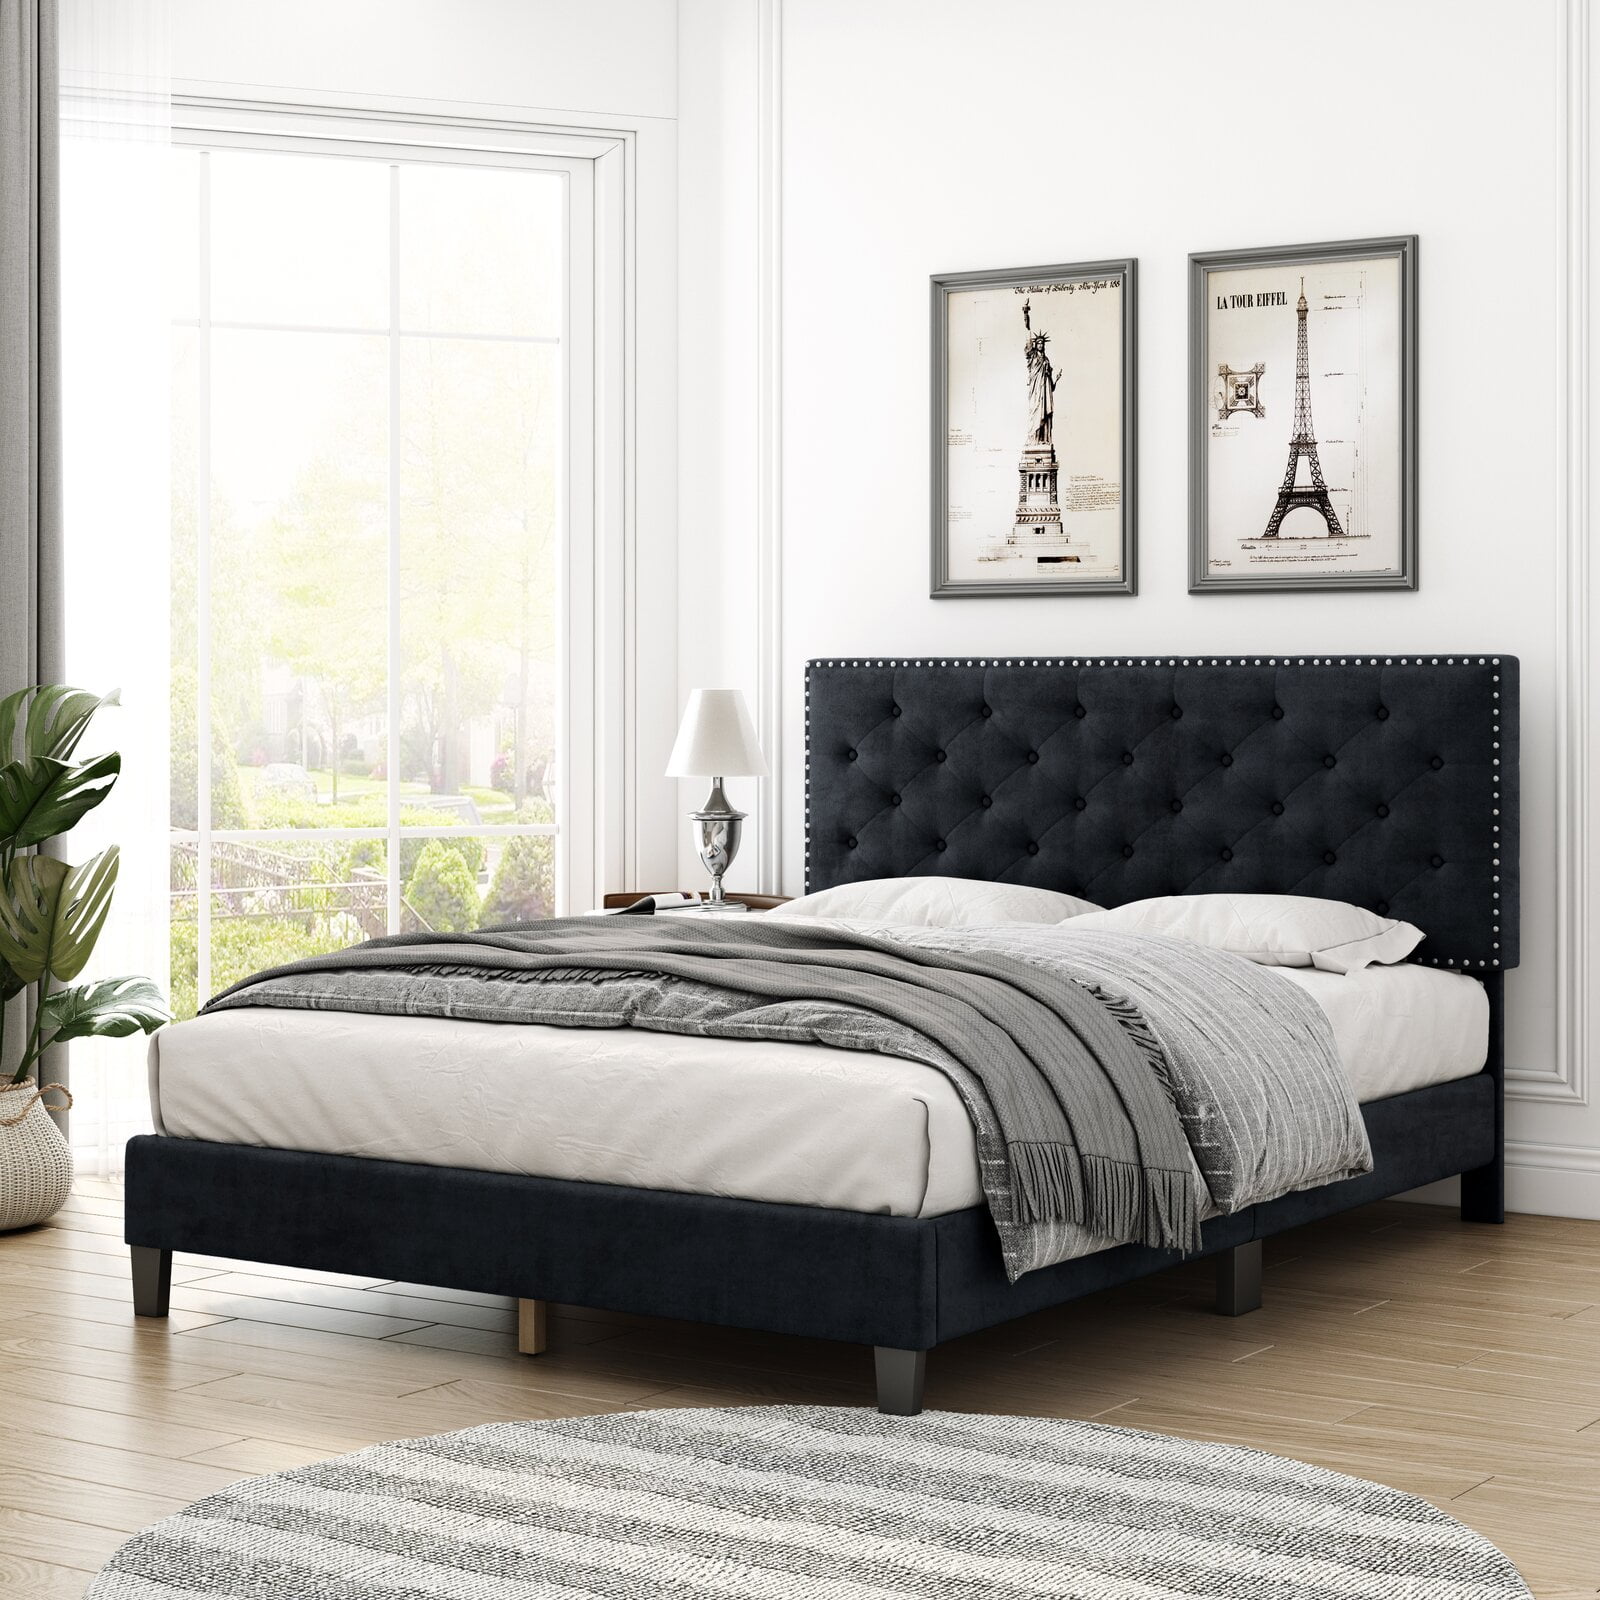 Zeebrasem een vergoeding tempo Homfa Queen Size Bed, Modern Upholstered Platform Bed Frame with Adjustable  Headboard for Bedroom, Black - Walmart.com